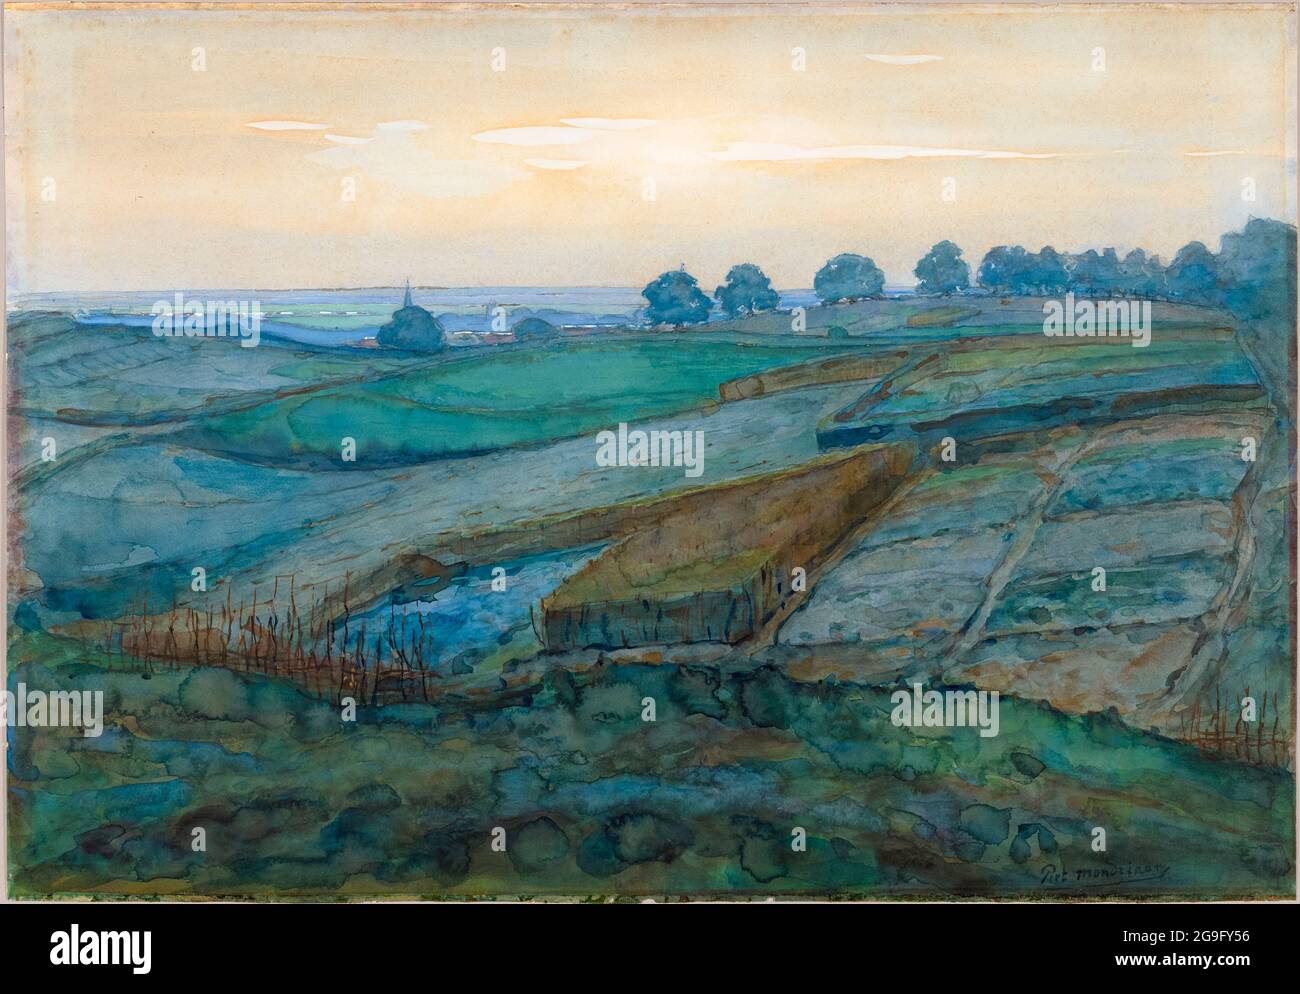 Piet Mondrian (Piet Mondriaan), Paysage près d'Arnhem, peinture, 1900-1901 Banque D'Images